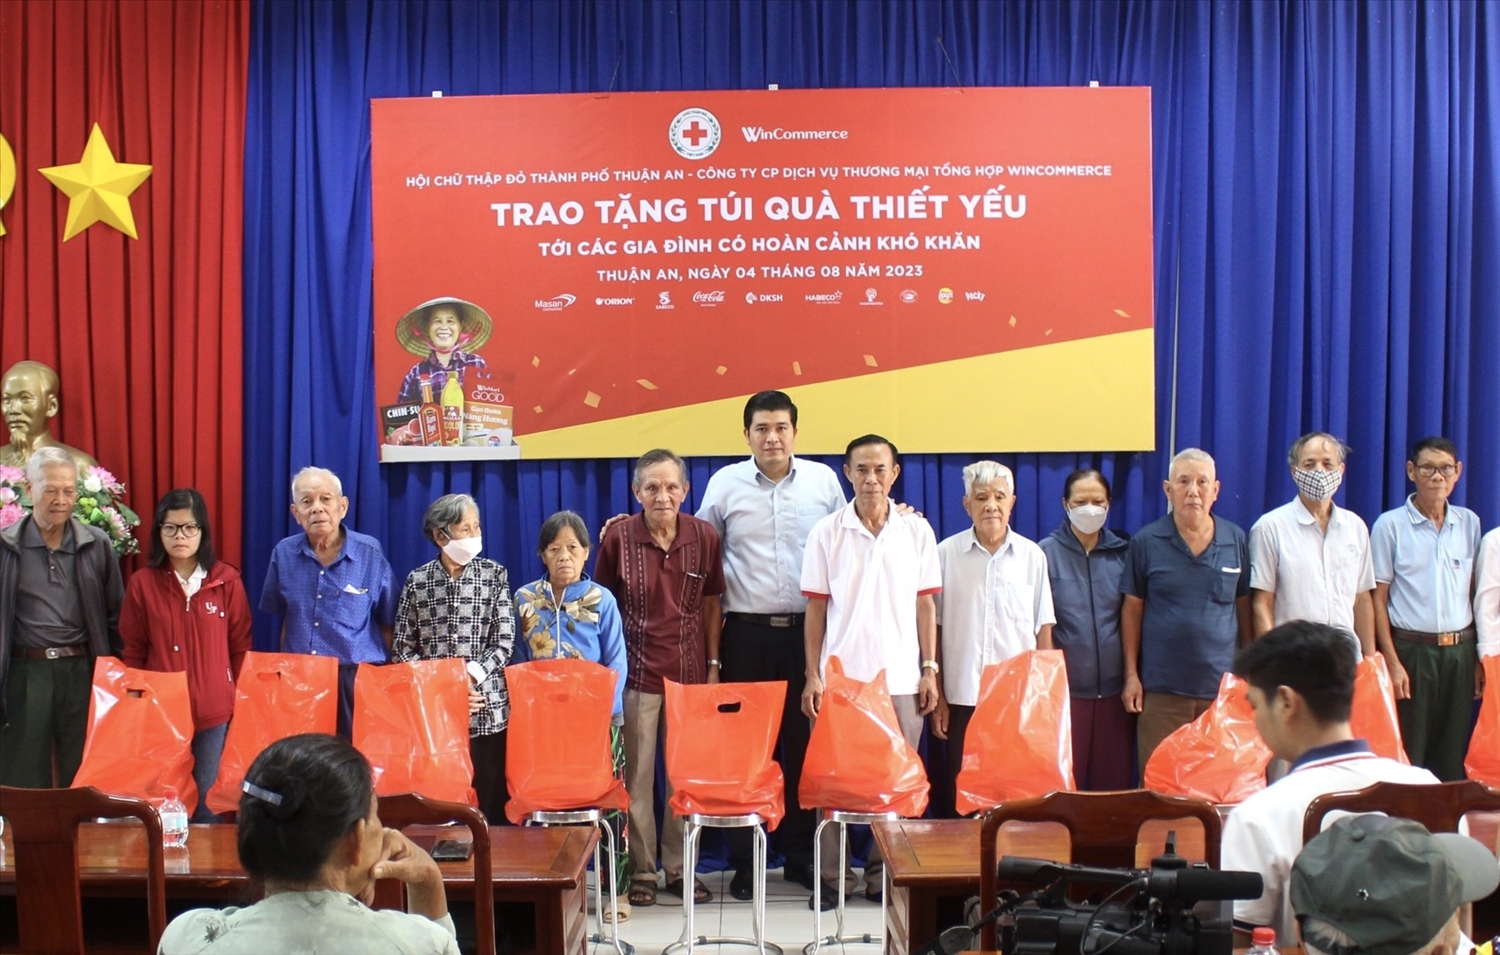 Các túi quà thiết yếu được trao tặng đến các hộ gia đình có hoàn cảnh khó khăn trên địa bàn thành phố Thuận An